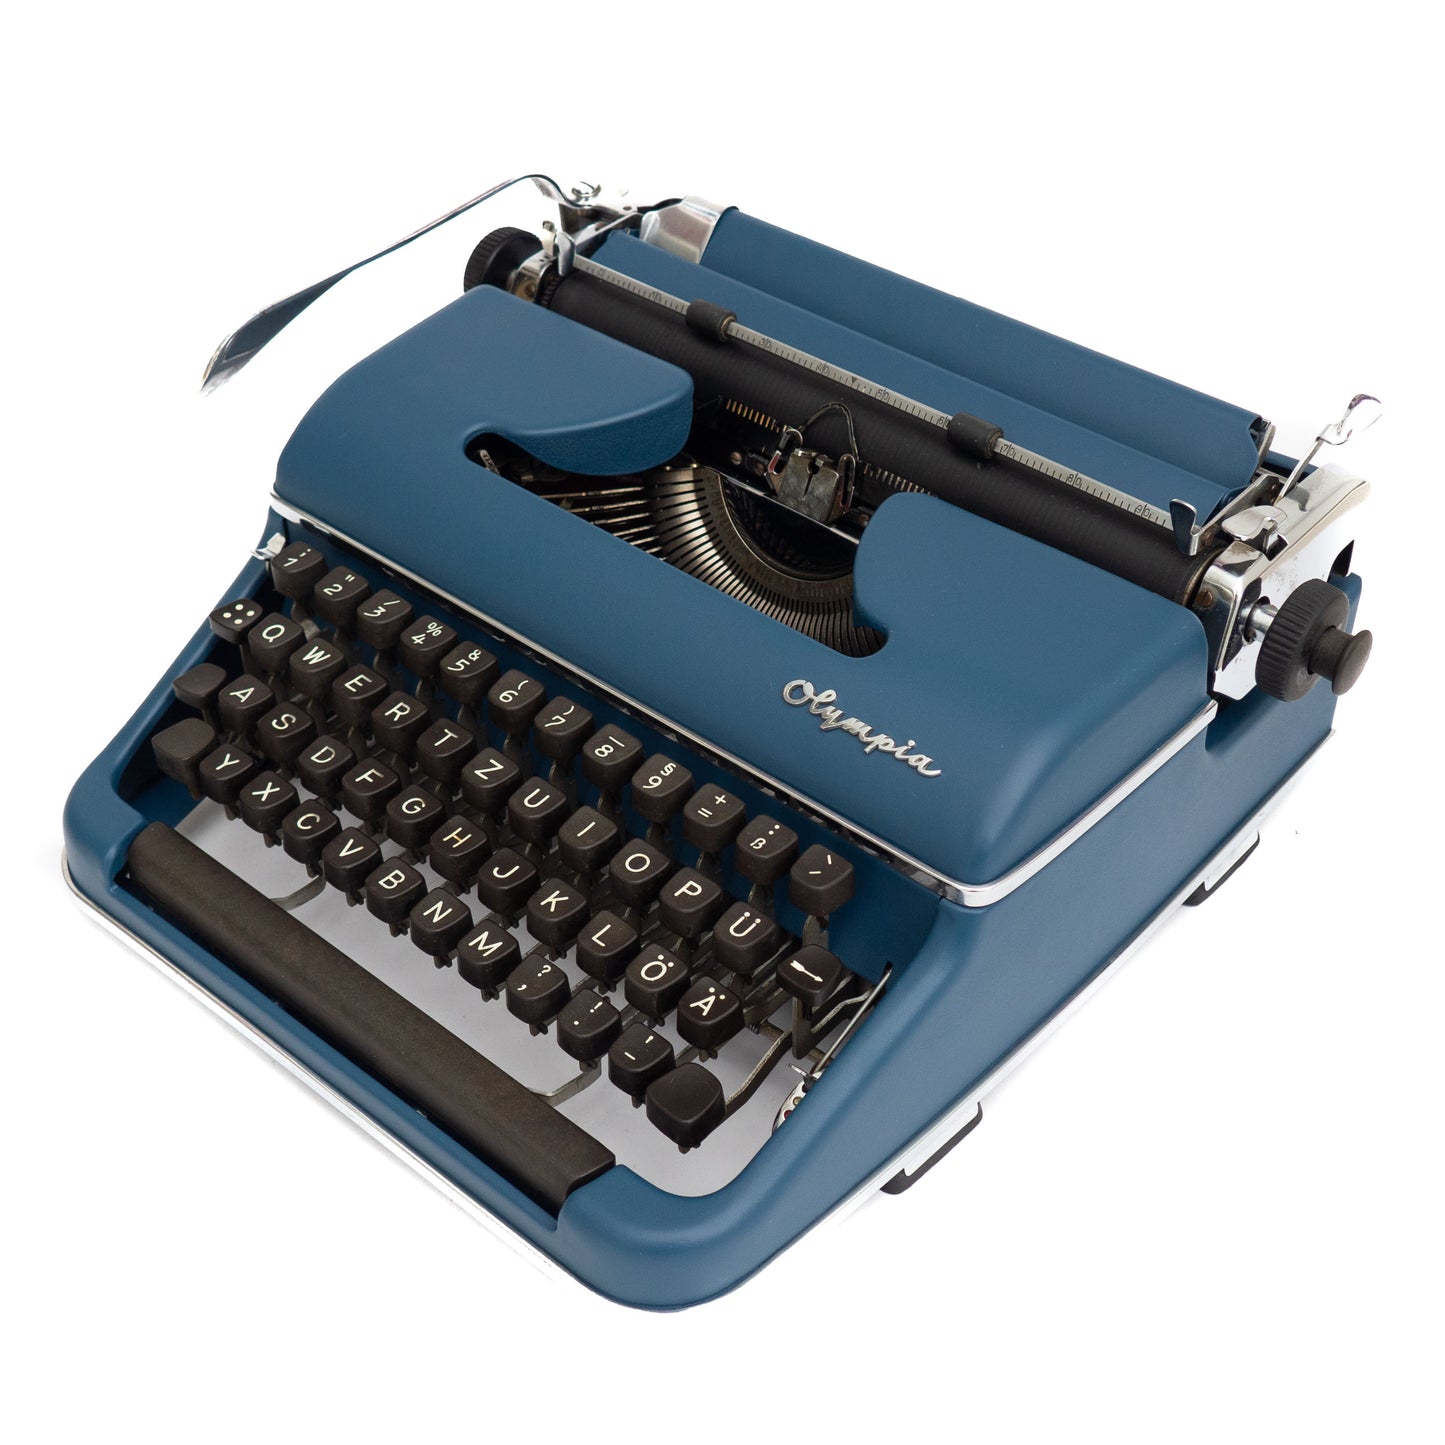 Vintage Schreibmaschine Olympia